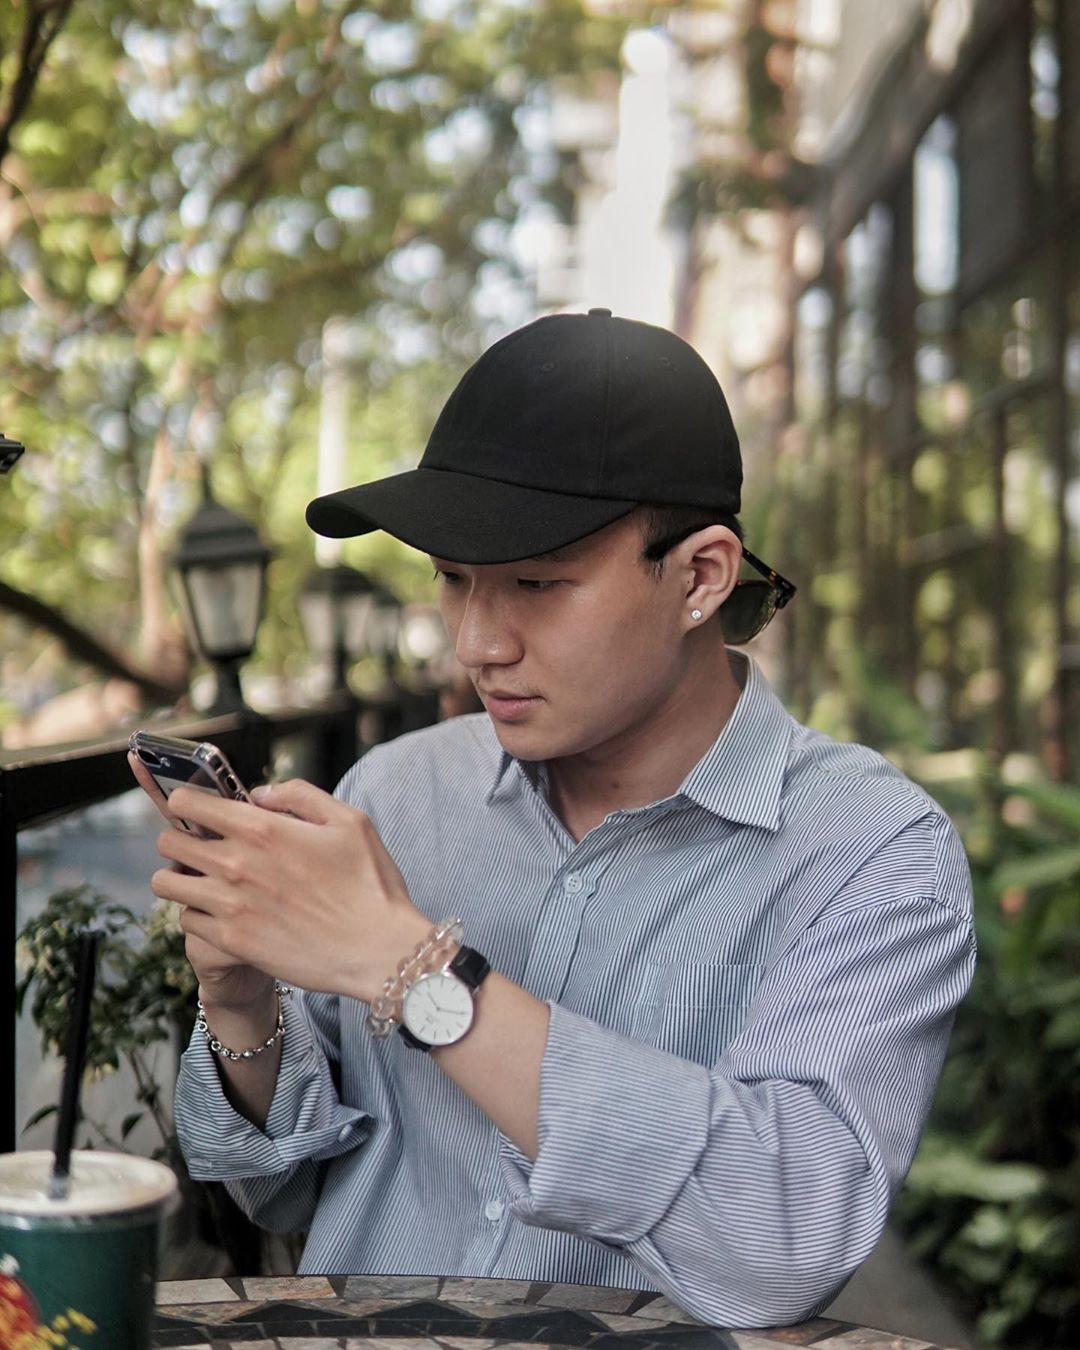 63 quán cà phê xinh xắn ở Sài Gòn và lời nhắn nhủ của chàng freelance